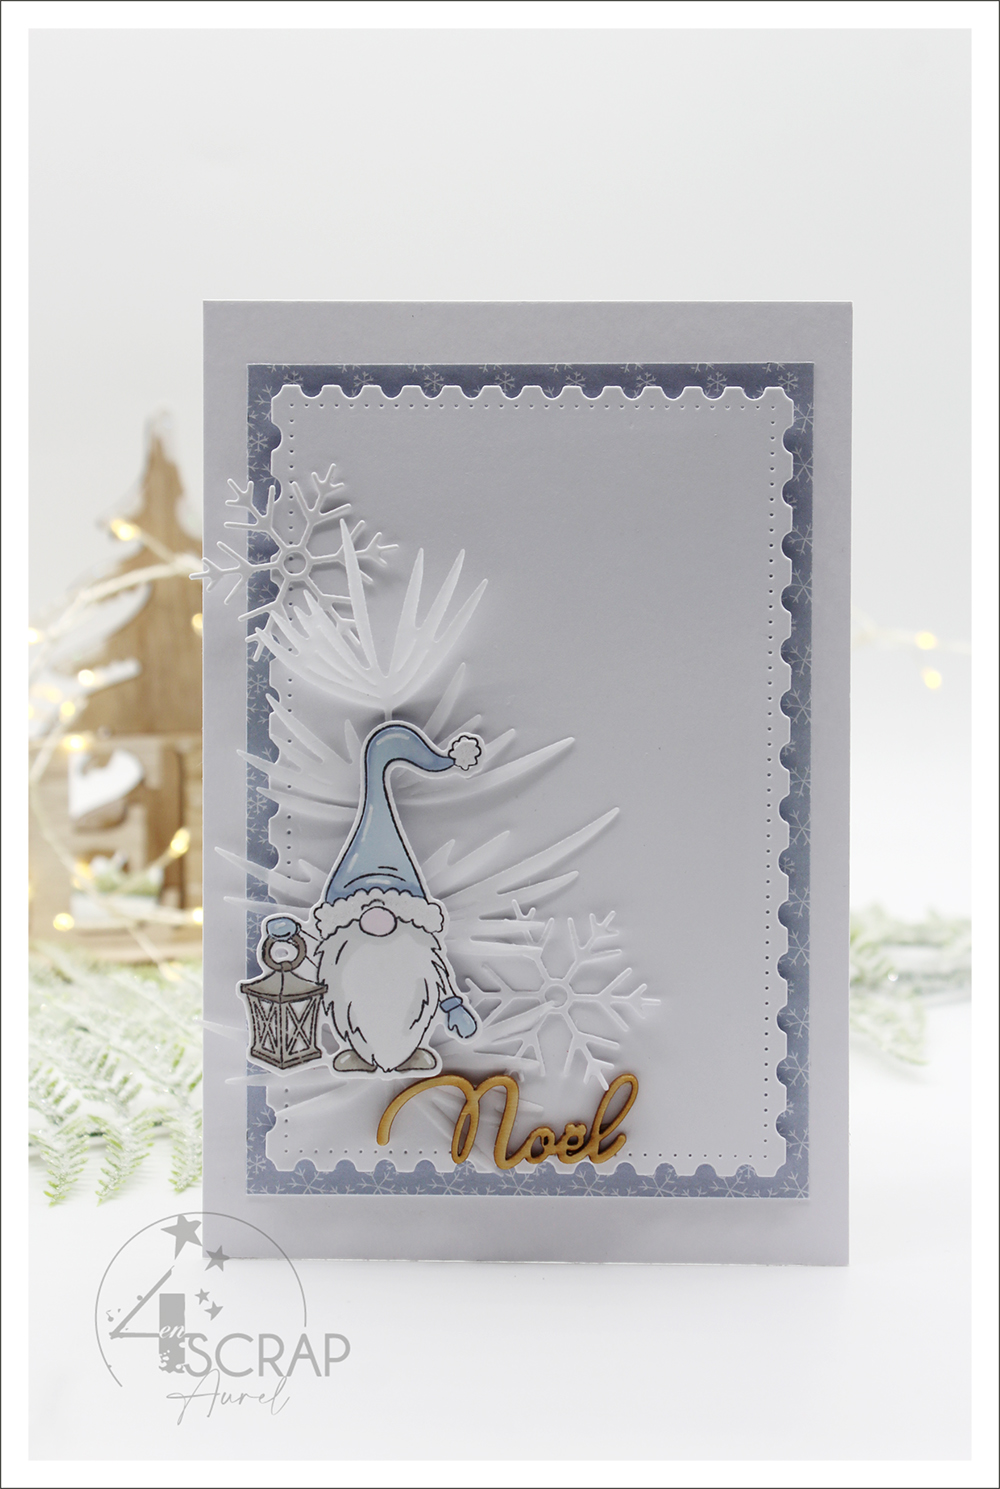 Carte de scrapbooking sur le thème du froid et de l'hiver est un lutin gnome, des feuillages, des flocons de neige.